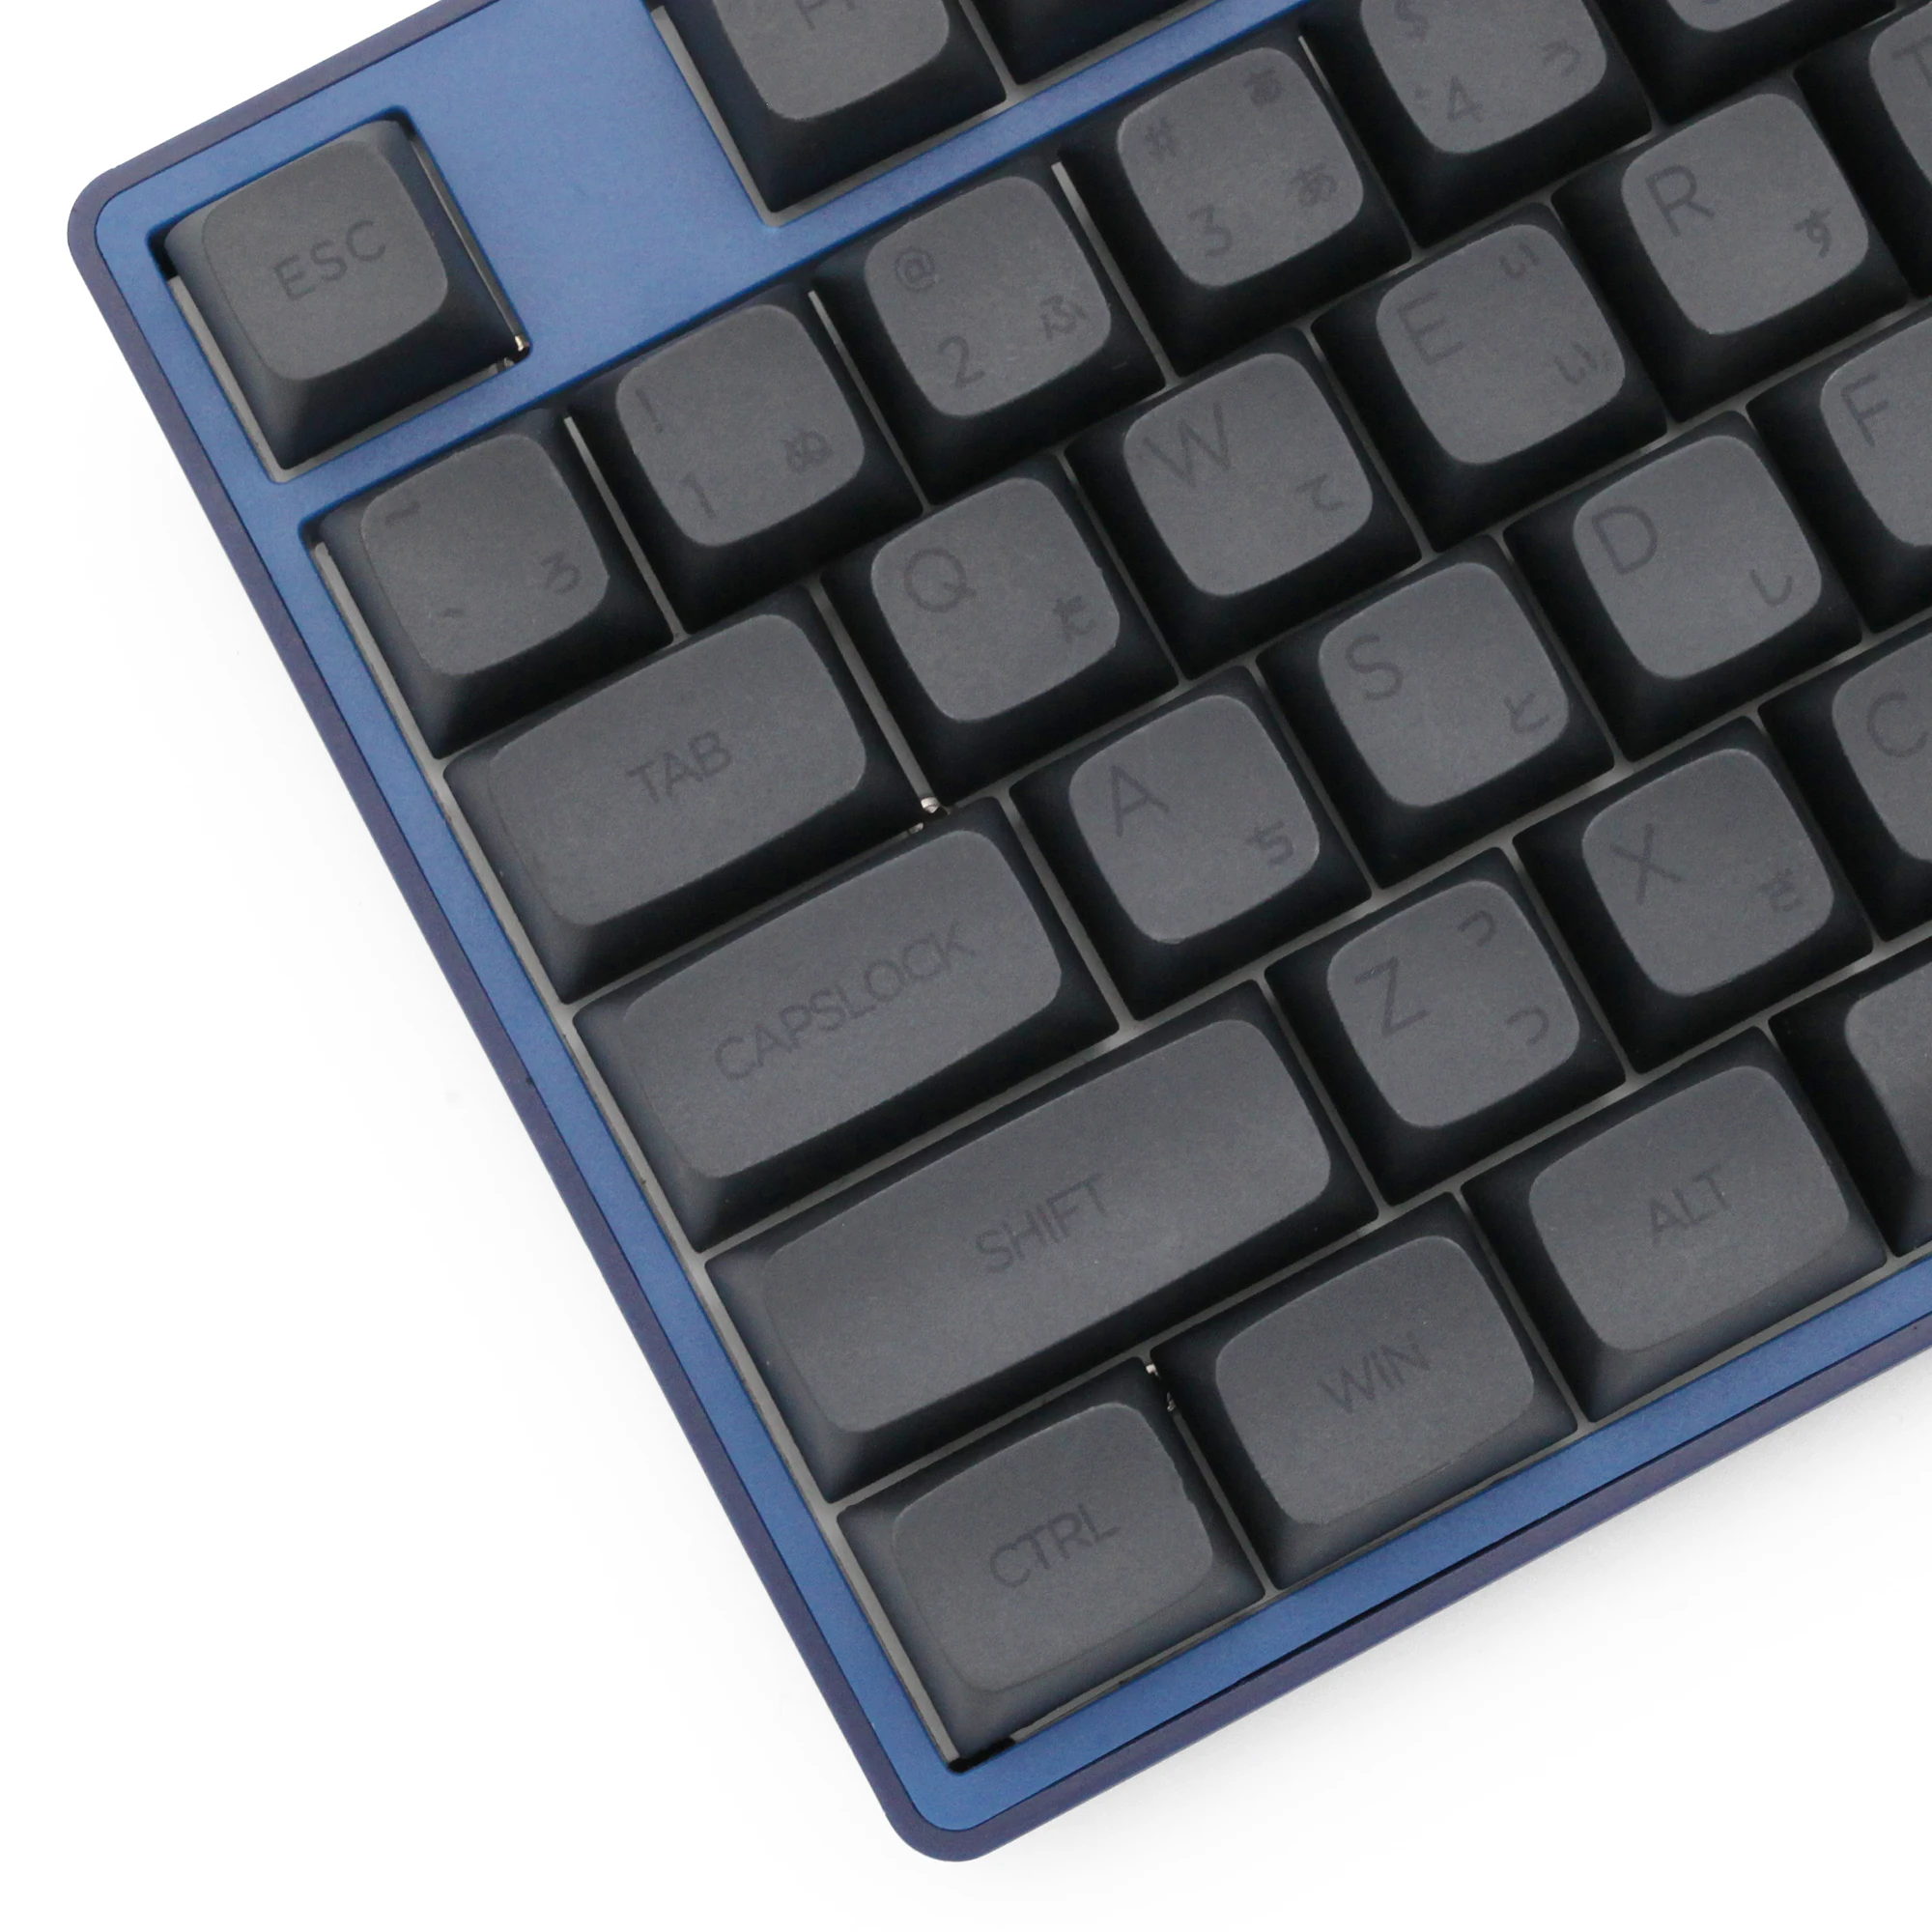 

Набор клавиатур XDA V2 для мужчин, набор клавиш для клавиатуры gh60, покер 87 tkl 104 ansi xd64 bm60 xd68 bm65 bm68 японский RU